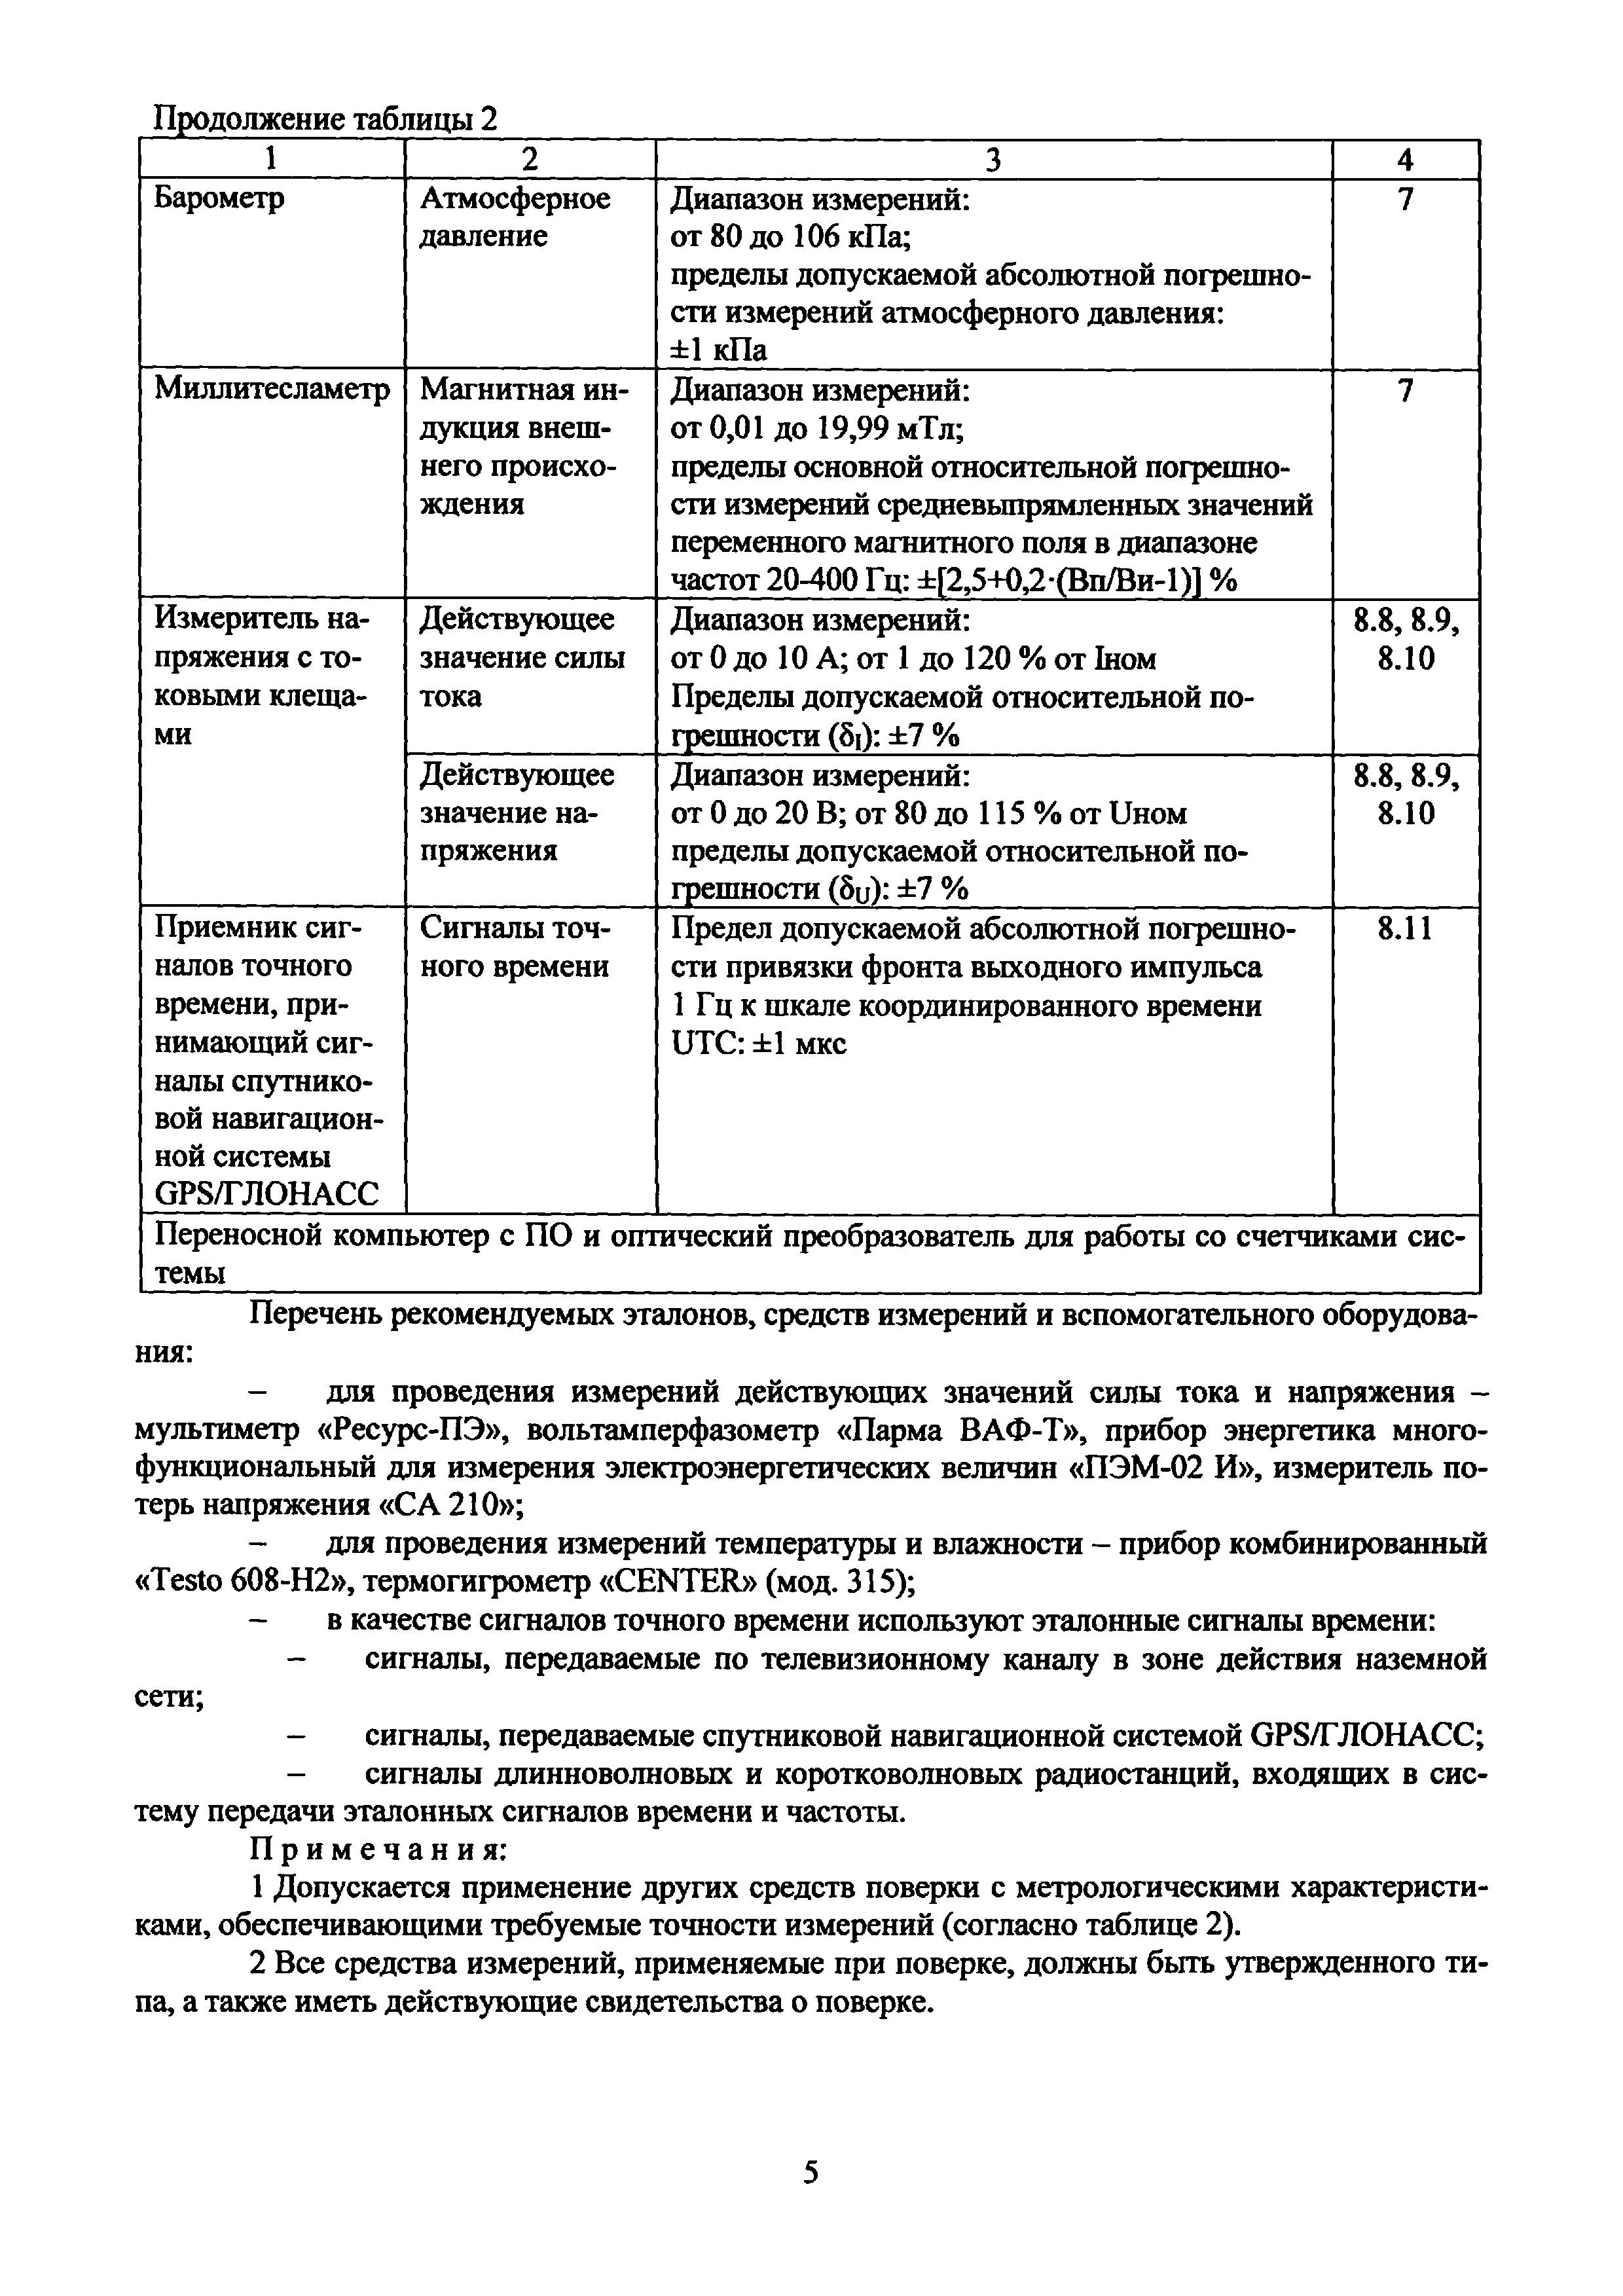 МП ЭПР-226-2020